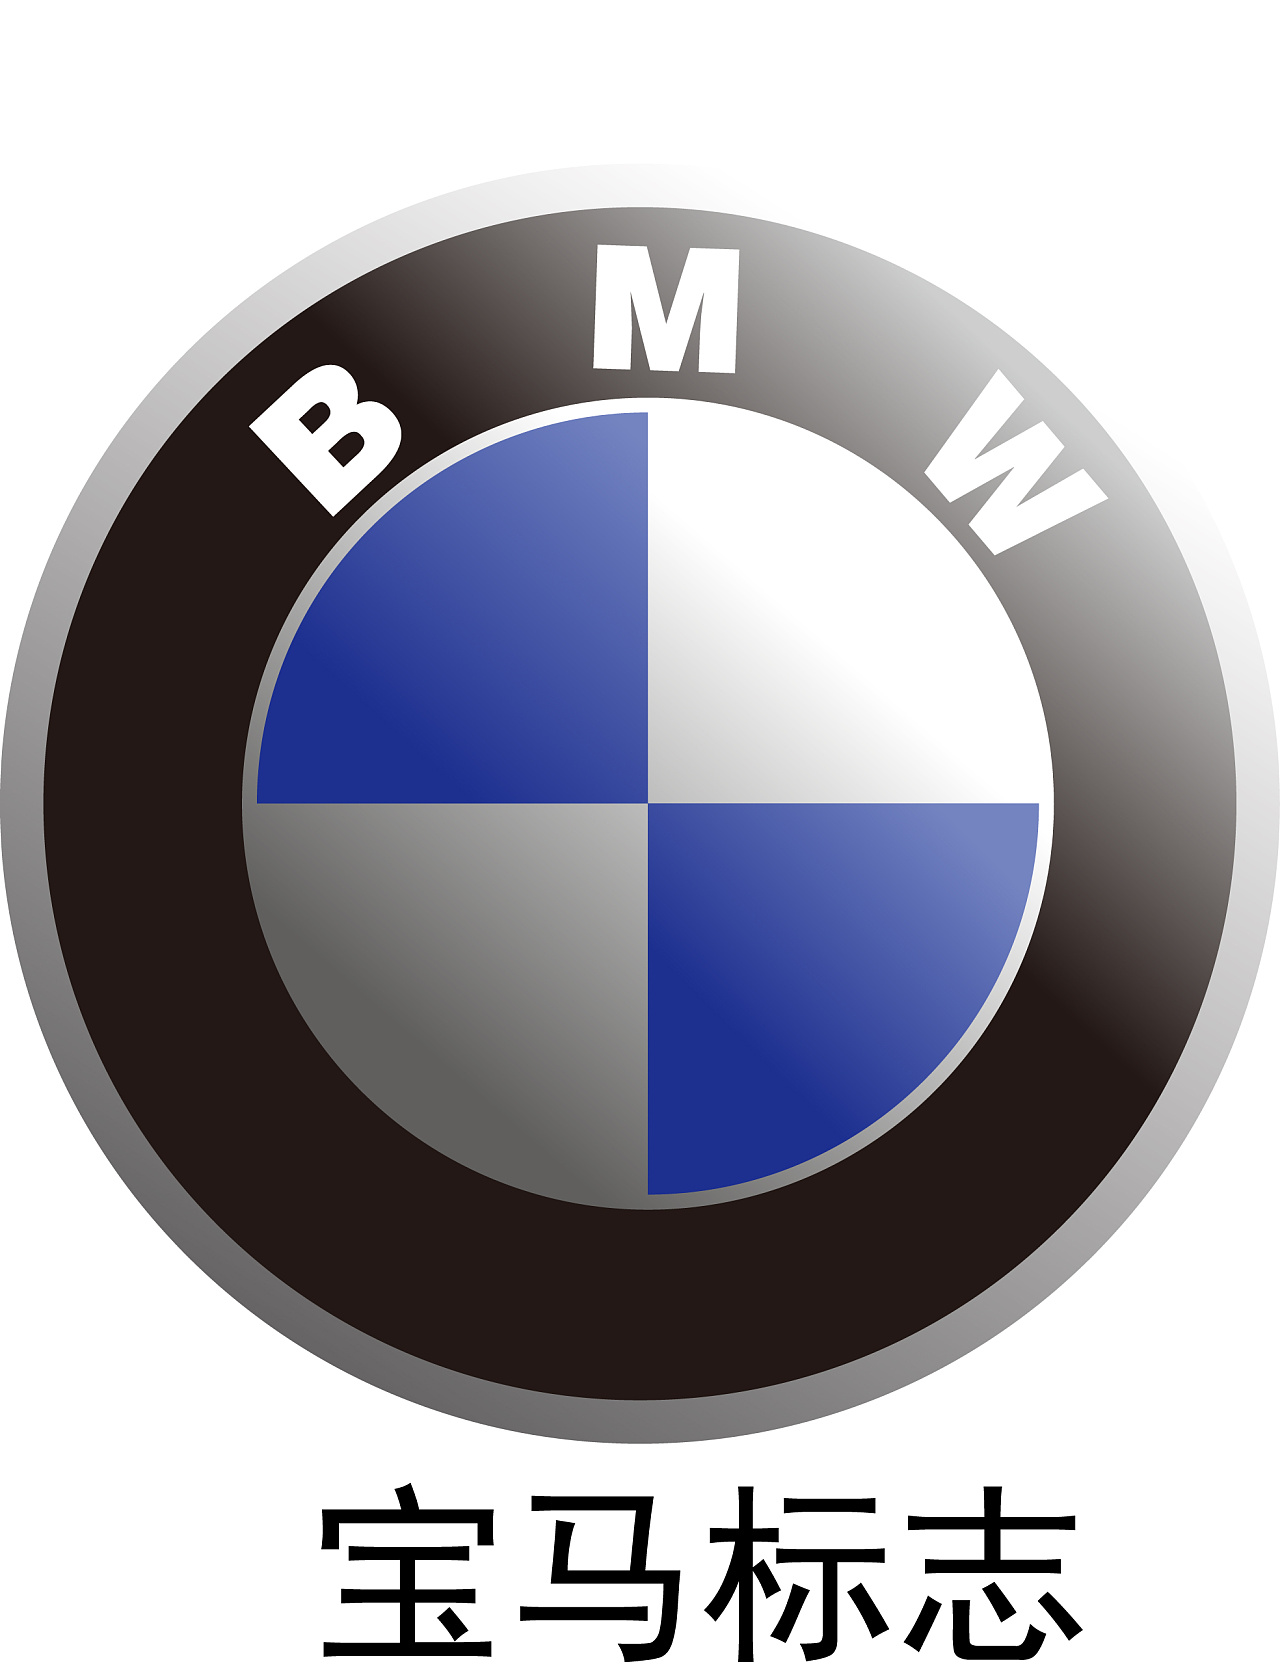 圆形BMW宝马logo图标图片素材-编号32287424-图行天下